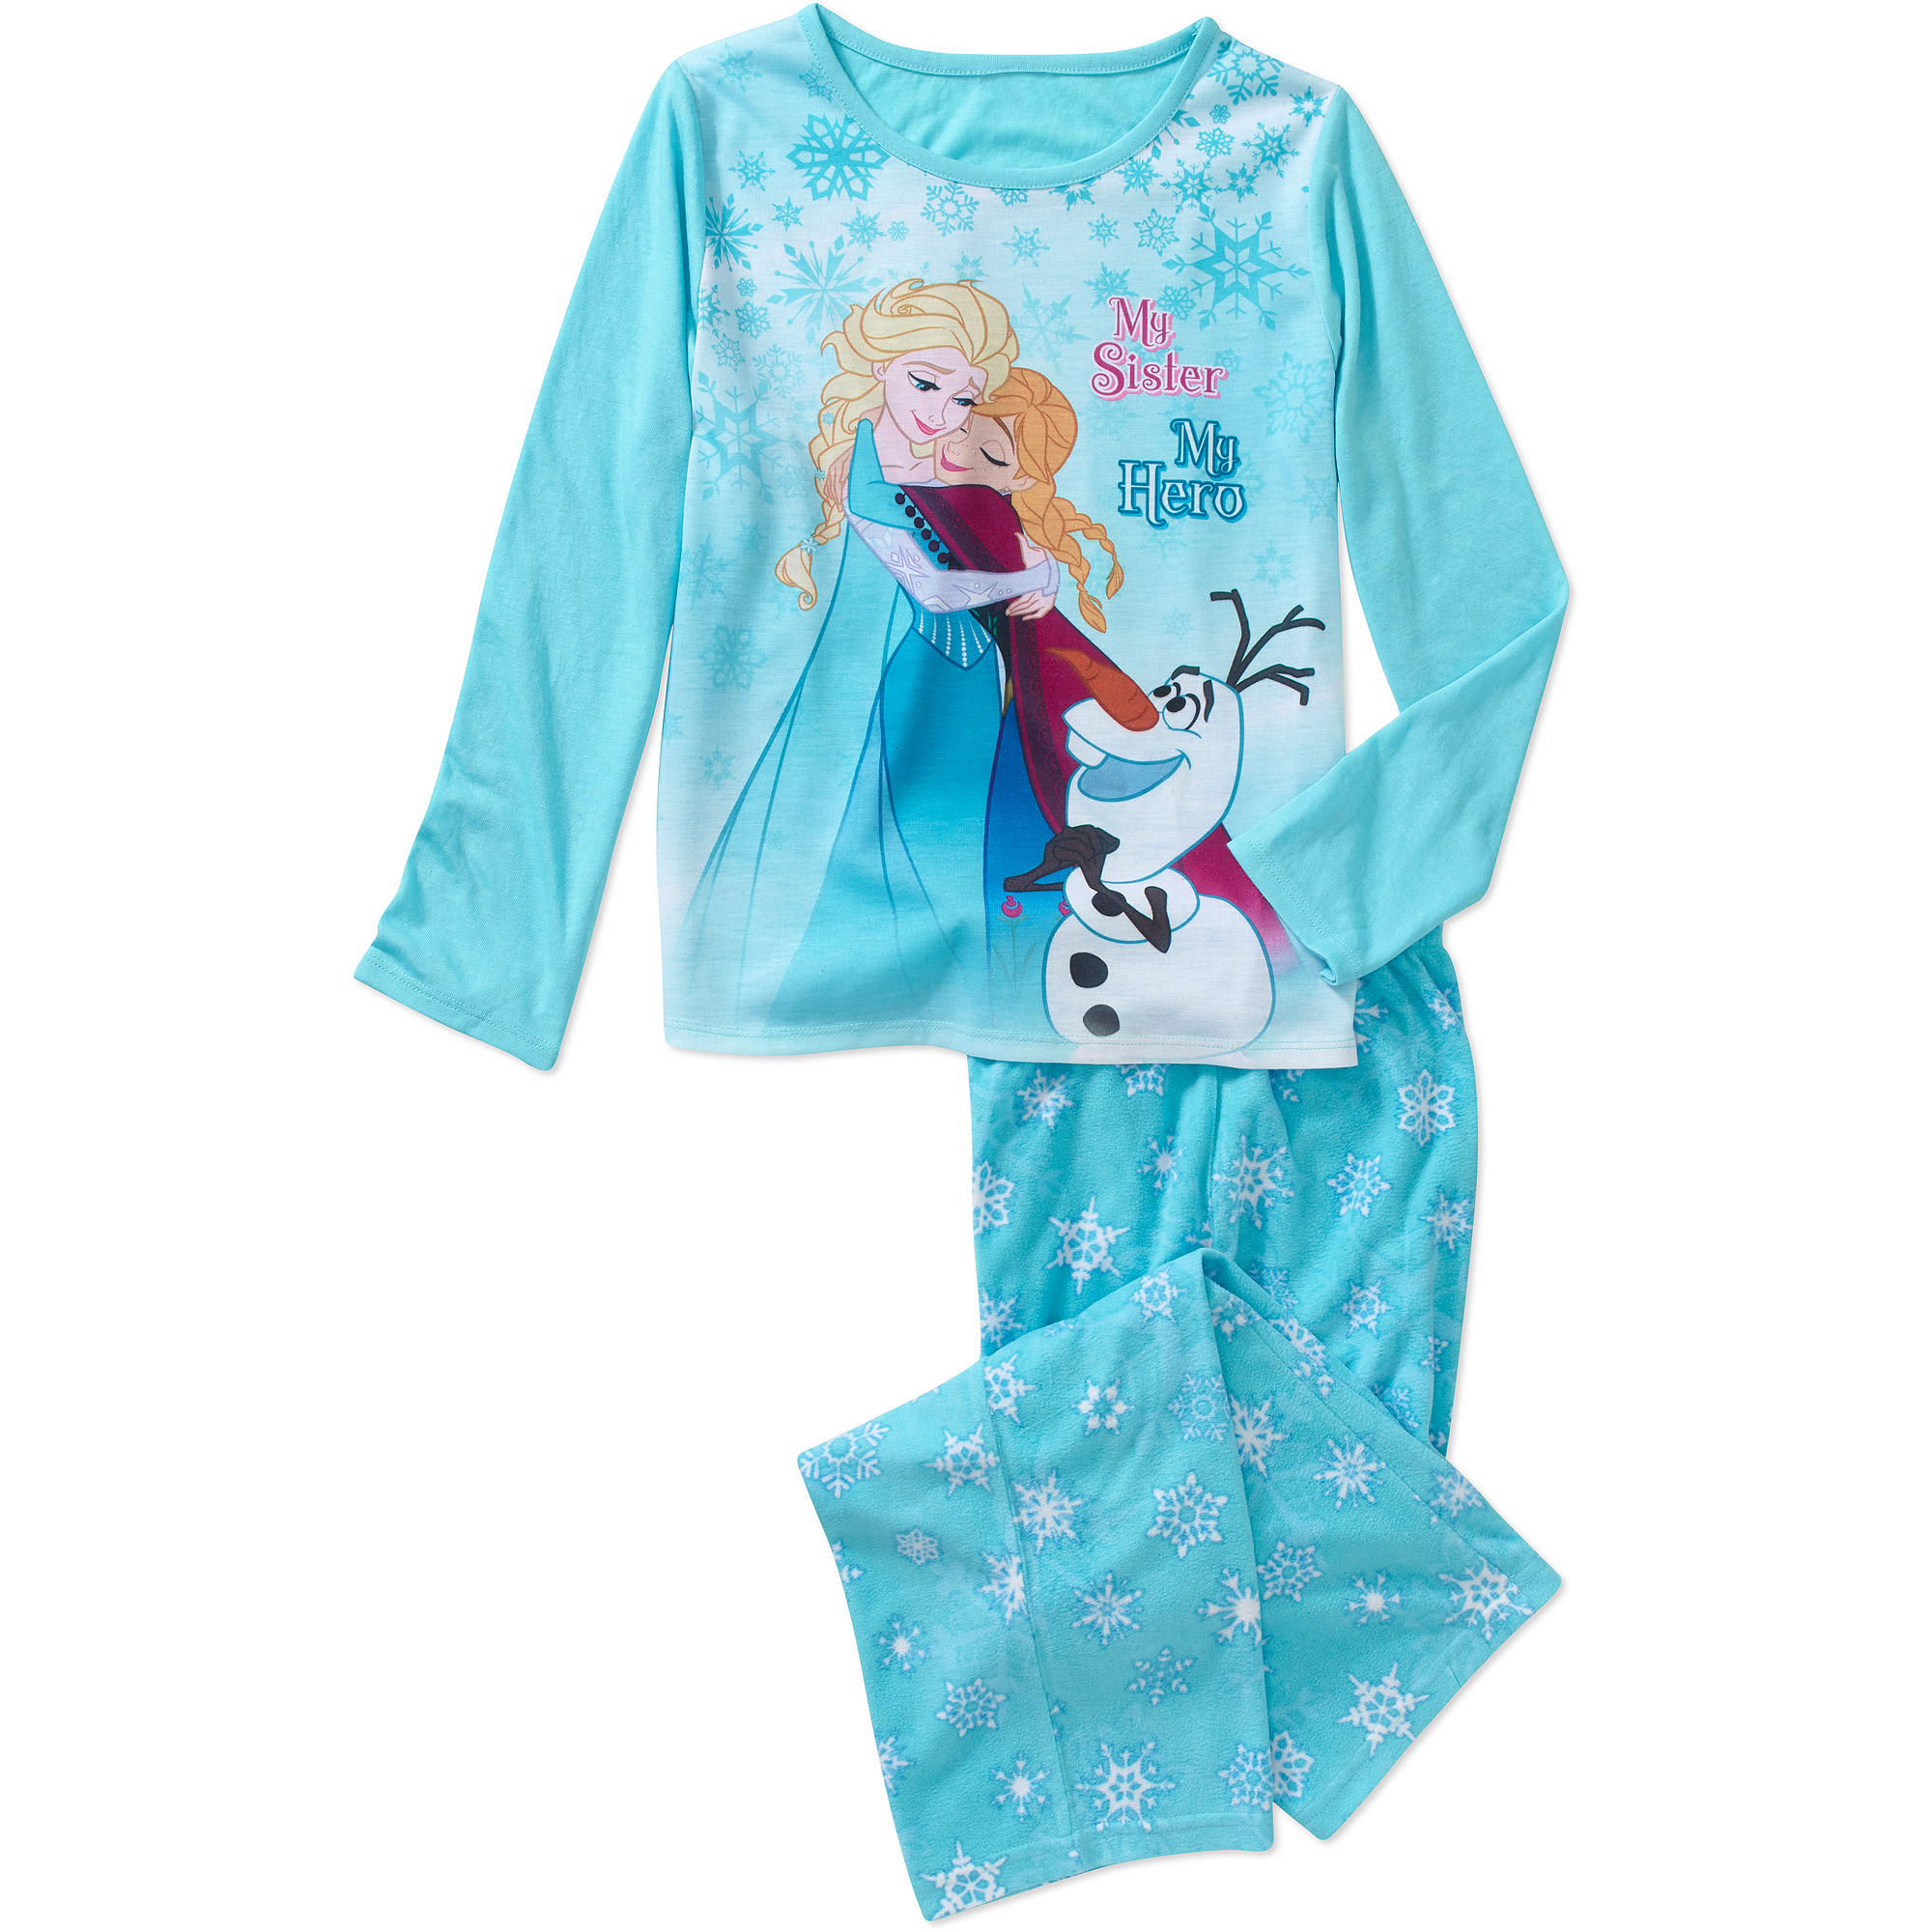 Frozen - Disney Merchandise - image 1 of 1